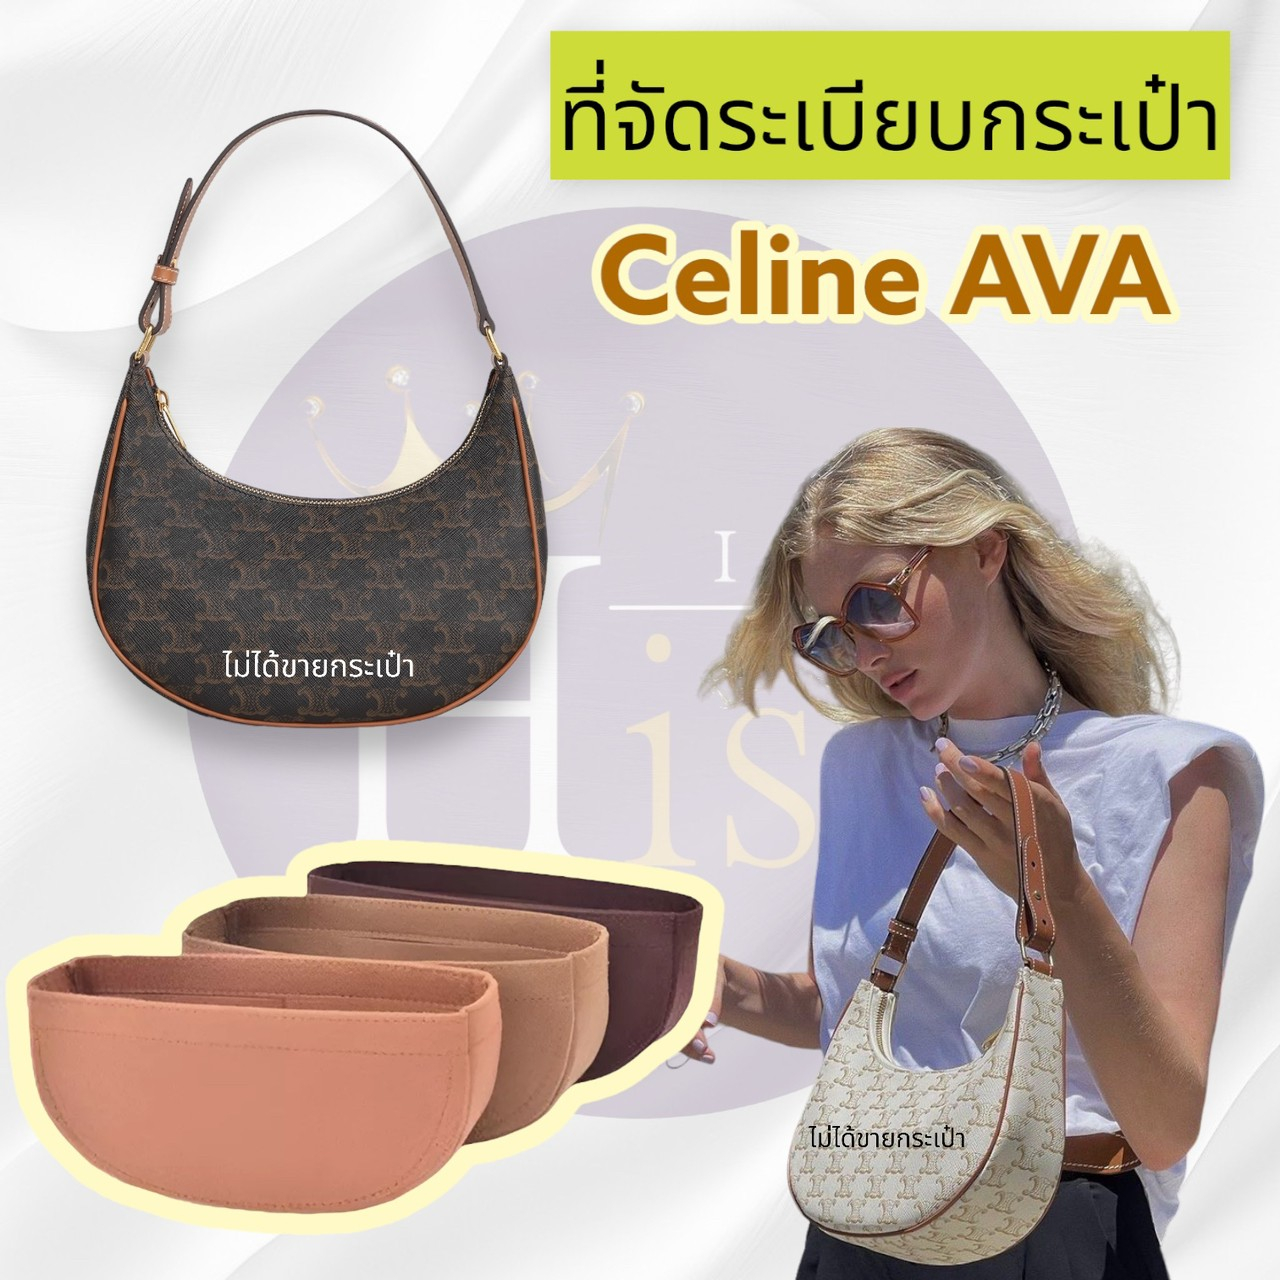 ที่จัดระเบียบกระเป๋า Celine AVA  จัดระเบียบ ซีลีน ดันทรงกระเป๋า พร้อมส่งจากไทย